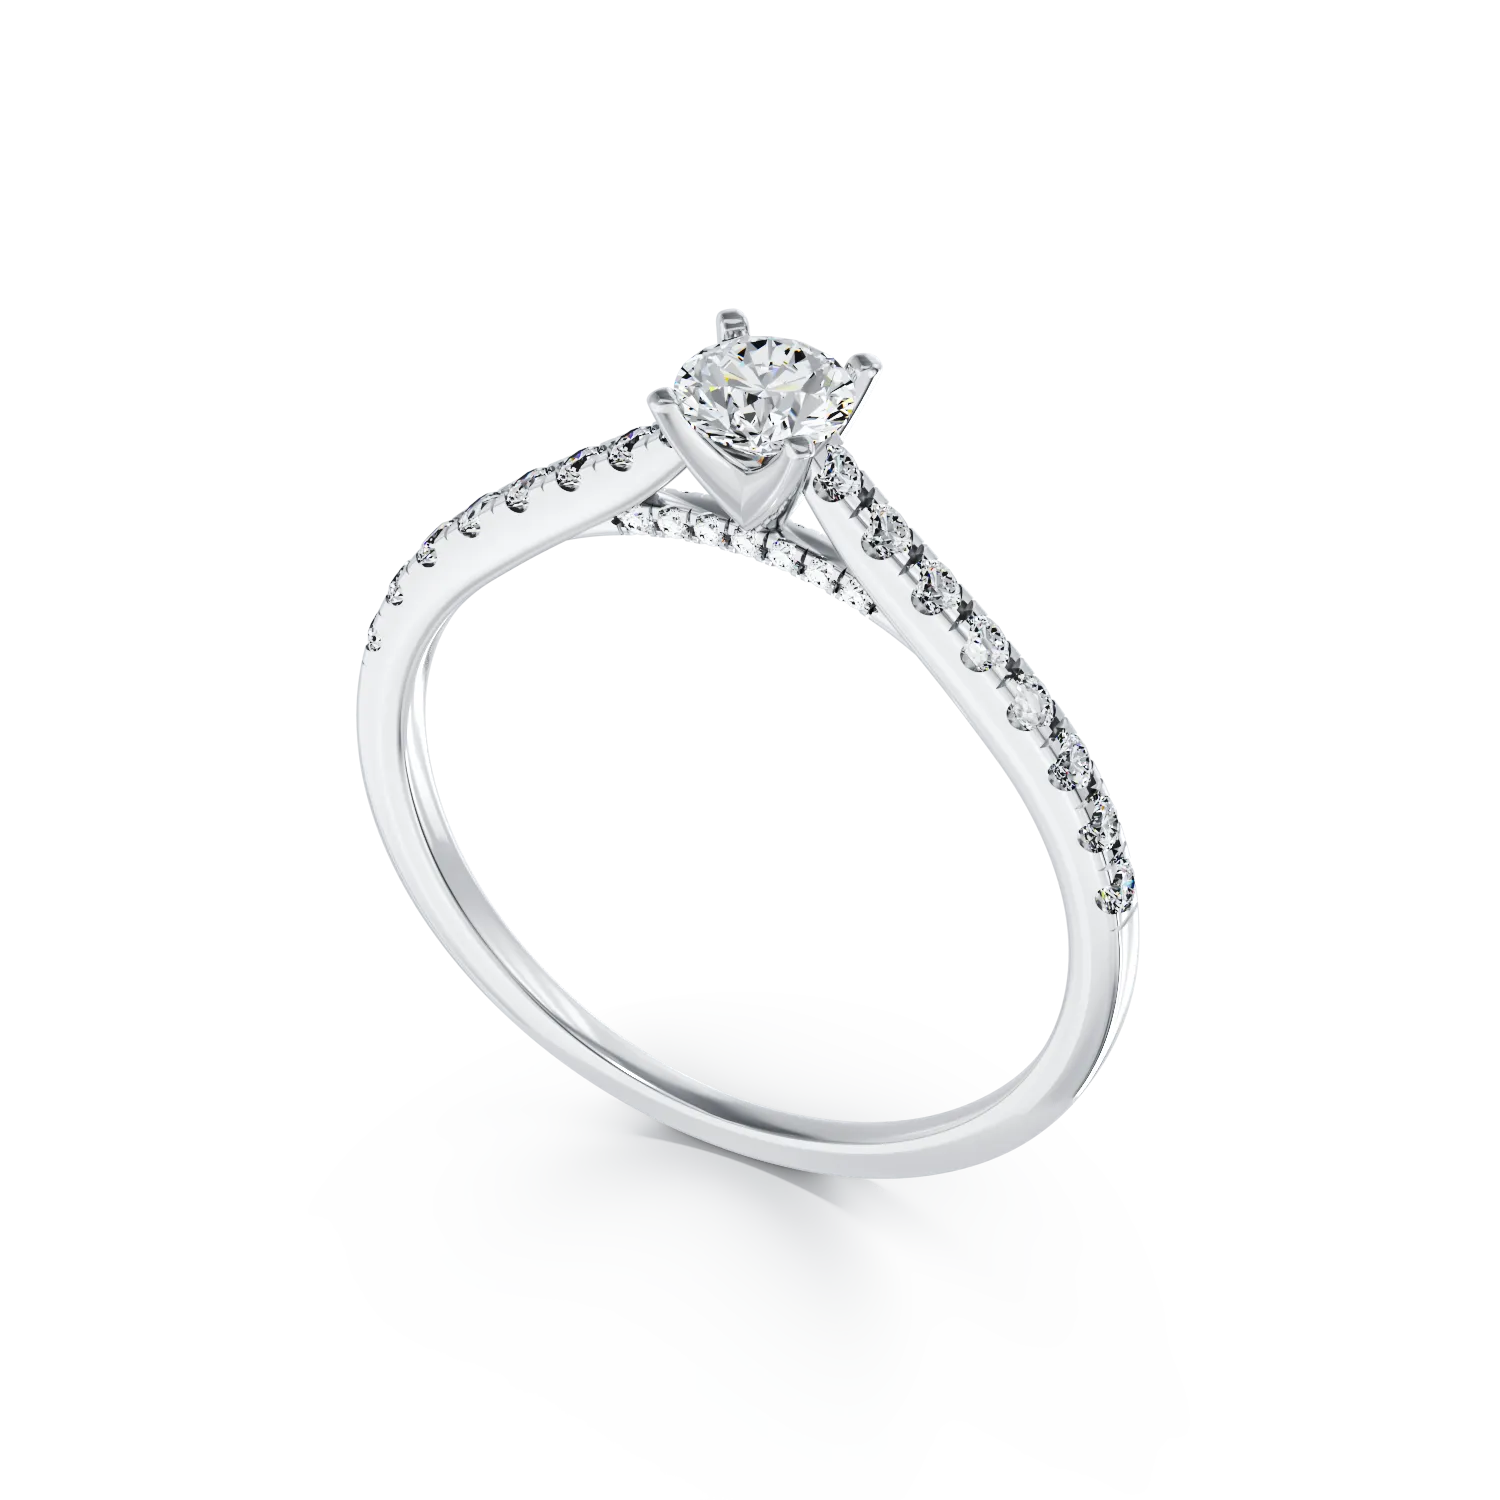 18K fehérarany eljegyzési gyűrű 0.39ct gyémánttal és 0.26ct gyémántokkal